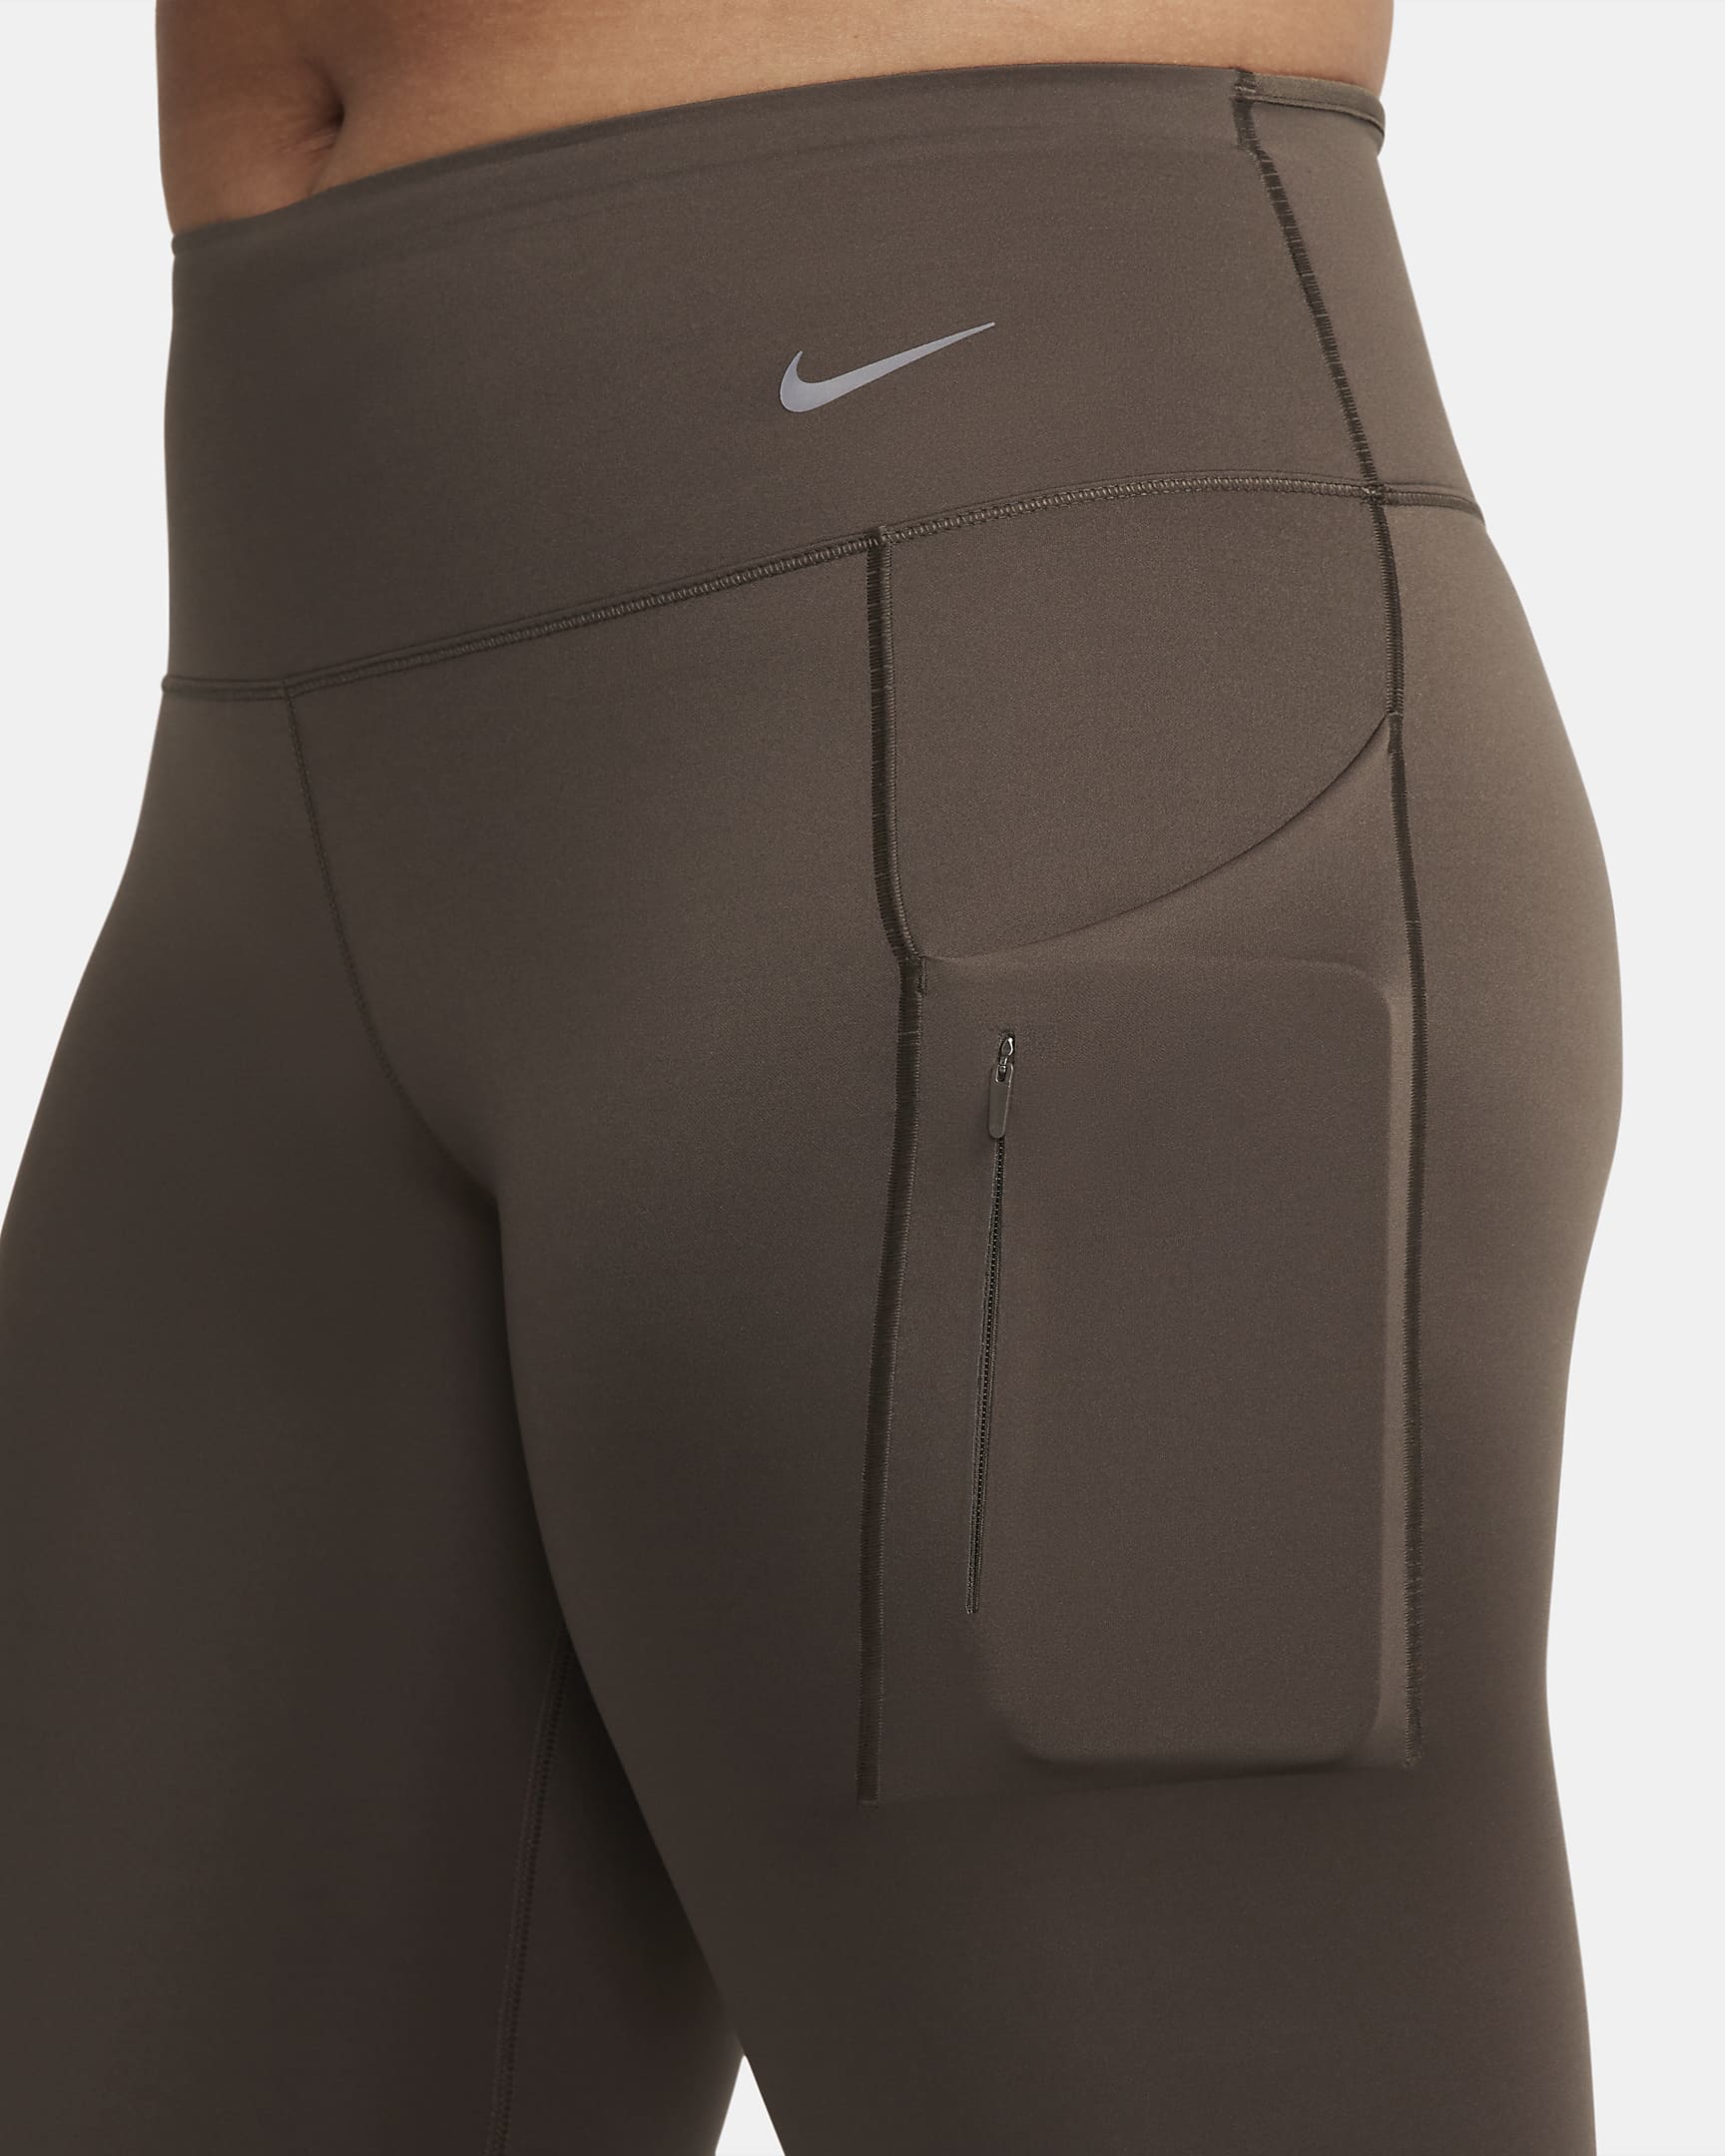 Legging taille mi-haute à maintien supérieur et coupe longue avec poches Nike Go pour femme - Baroque Brown/Noir